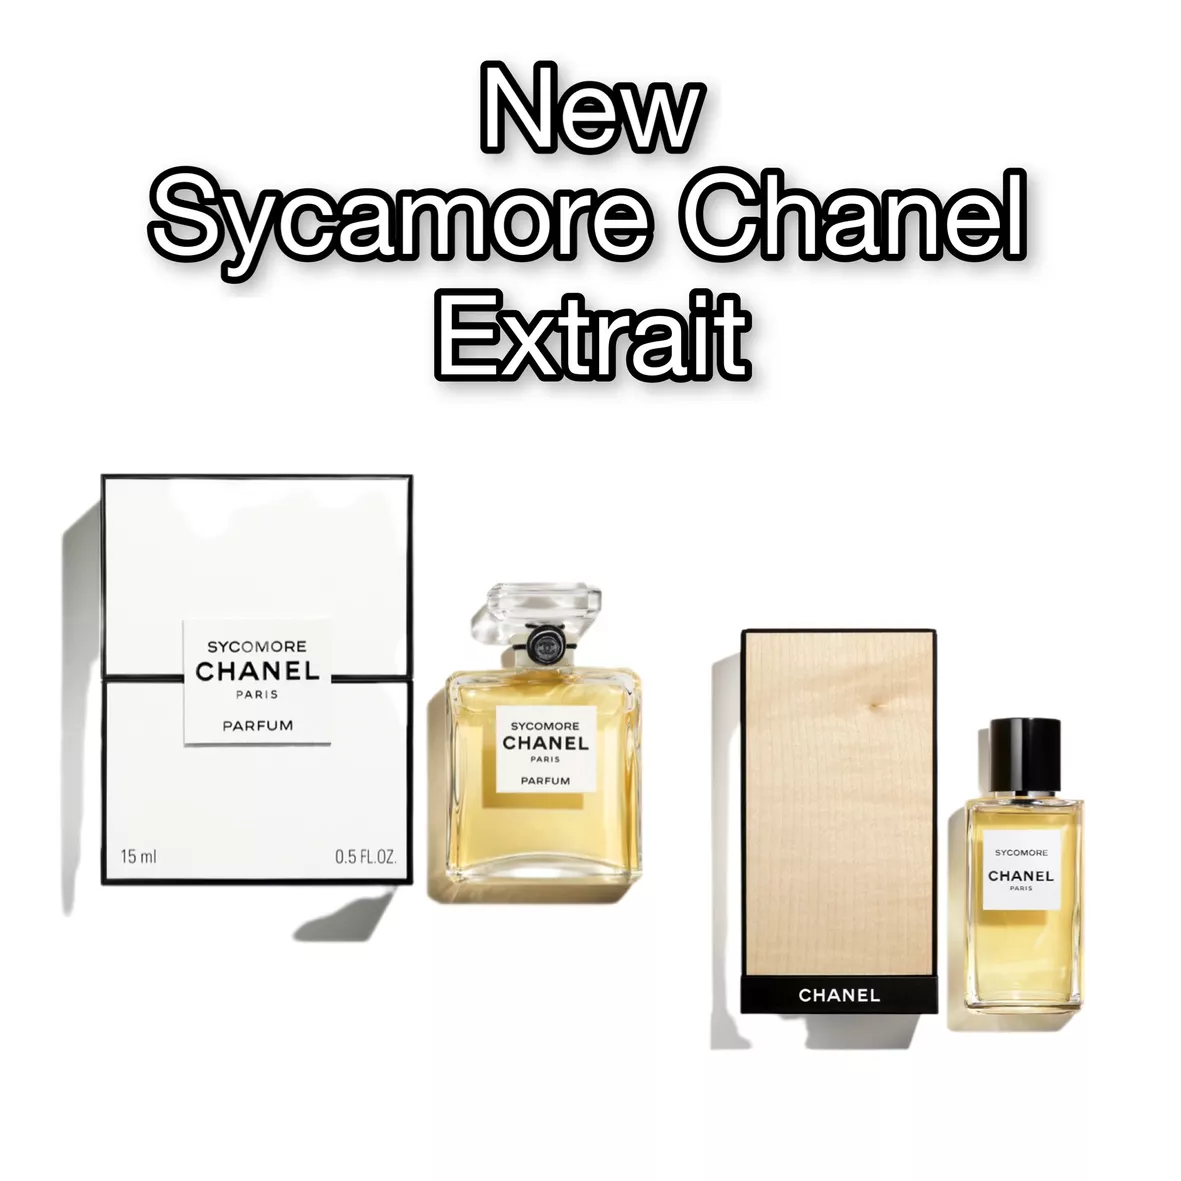 Les Exclusifs de Chanel Coromandel Parfum 0.5 oz/15 ml.